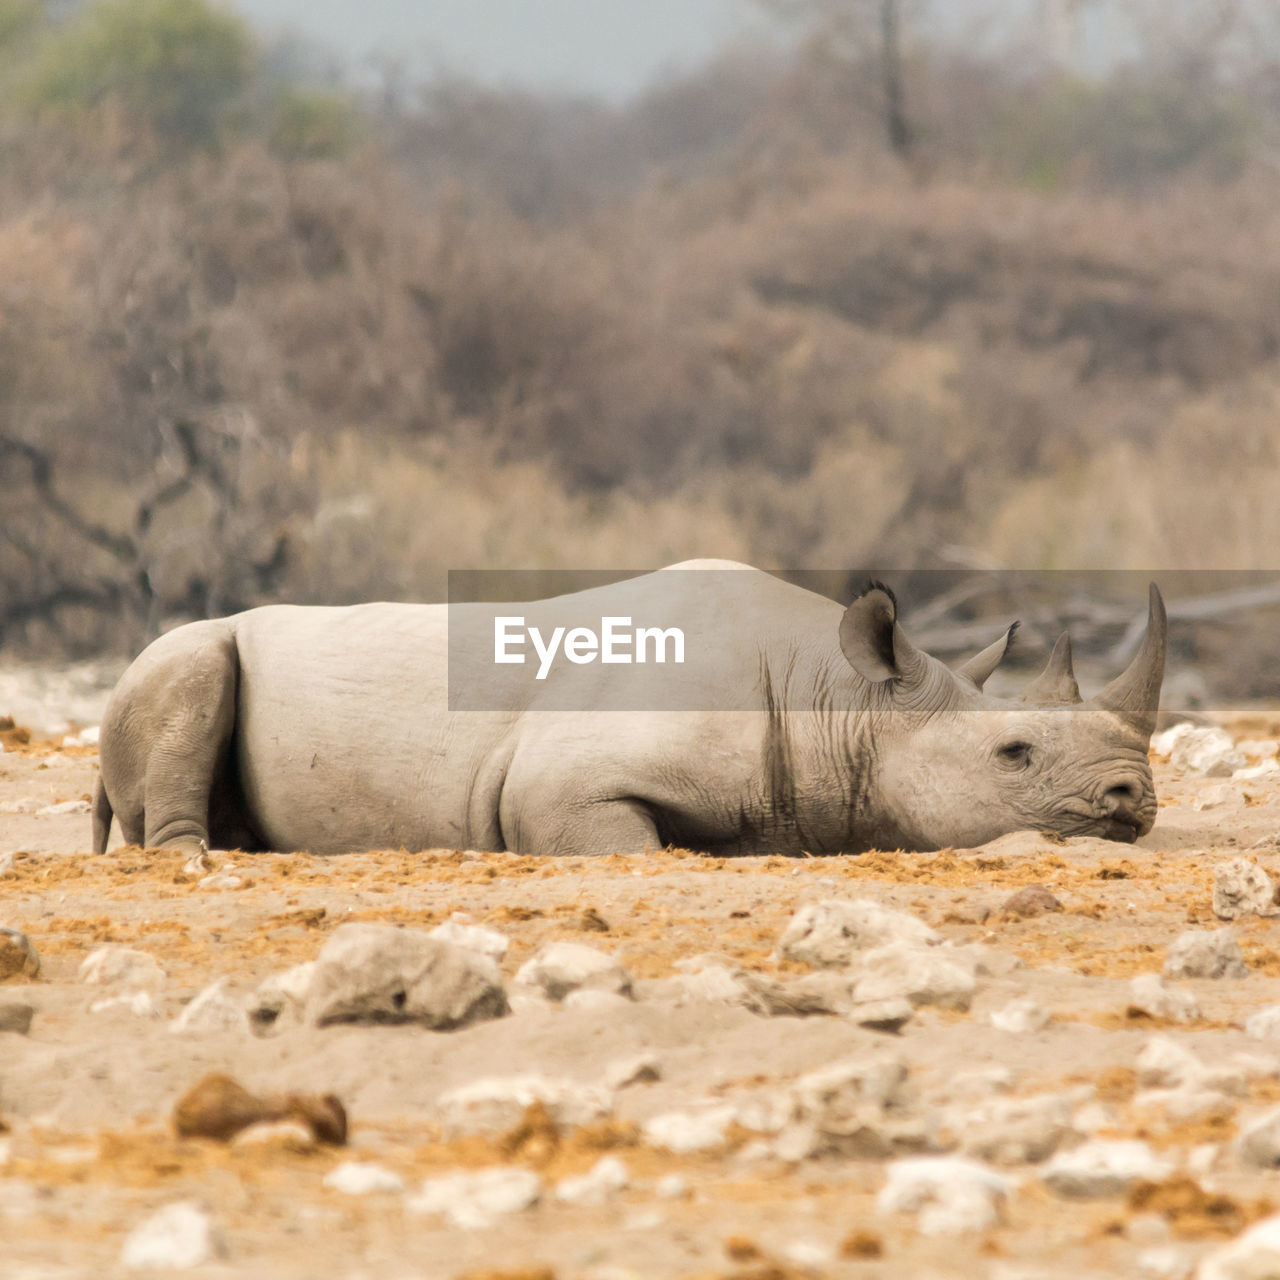 Rhinoceros relaxing on field